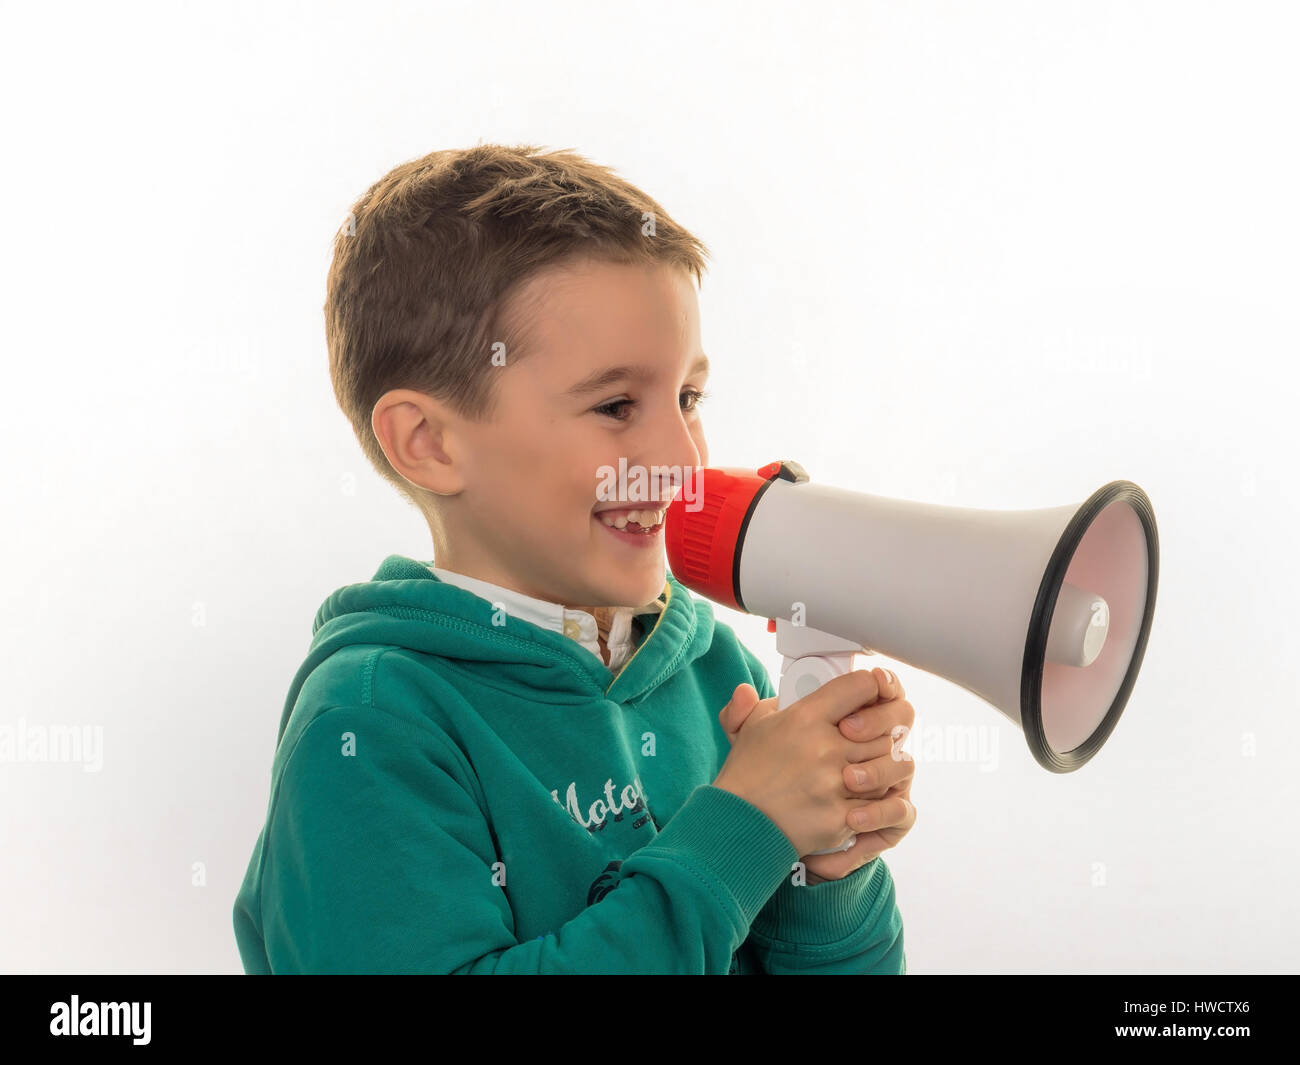 A child with a megaphone in the hand, Ein Kind mit einem Megaphon in der Hand Stock Photo